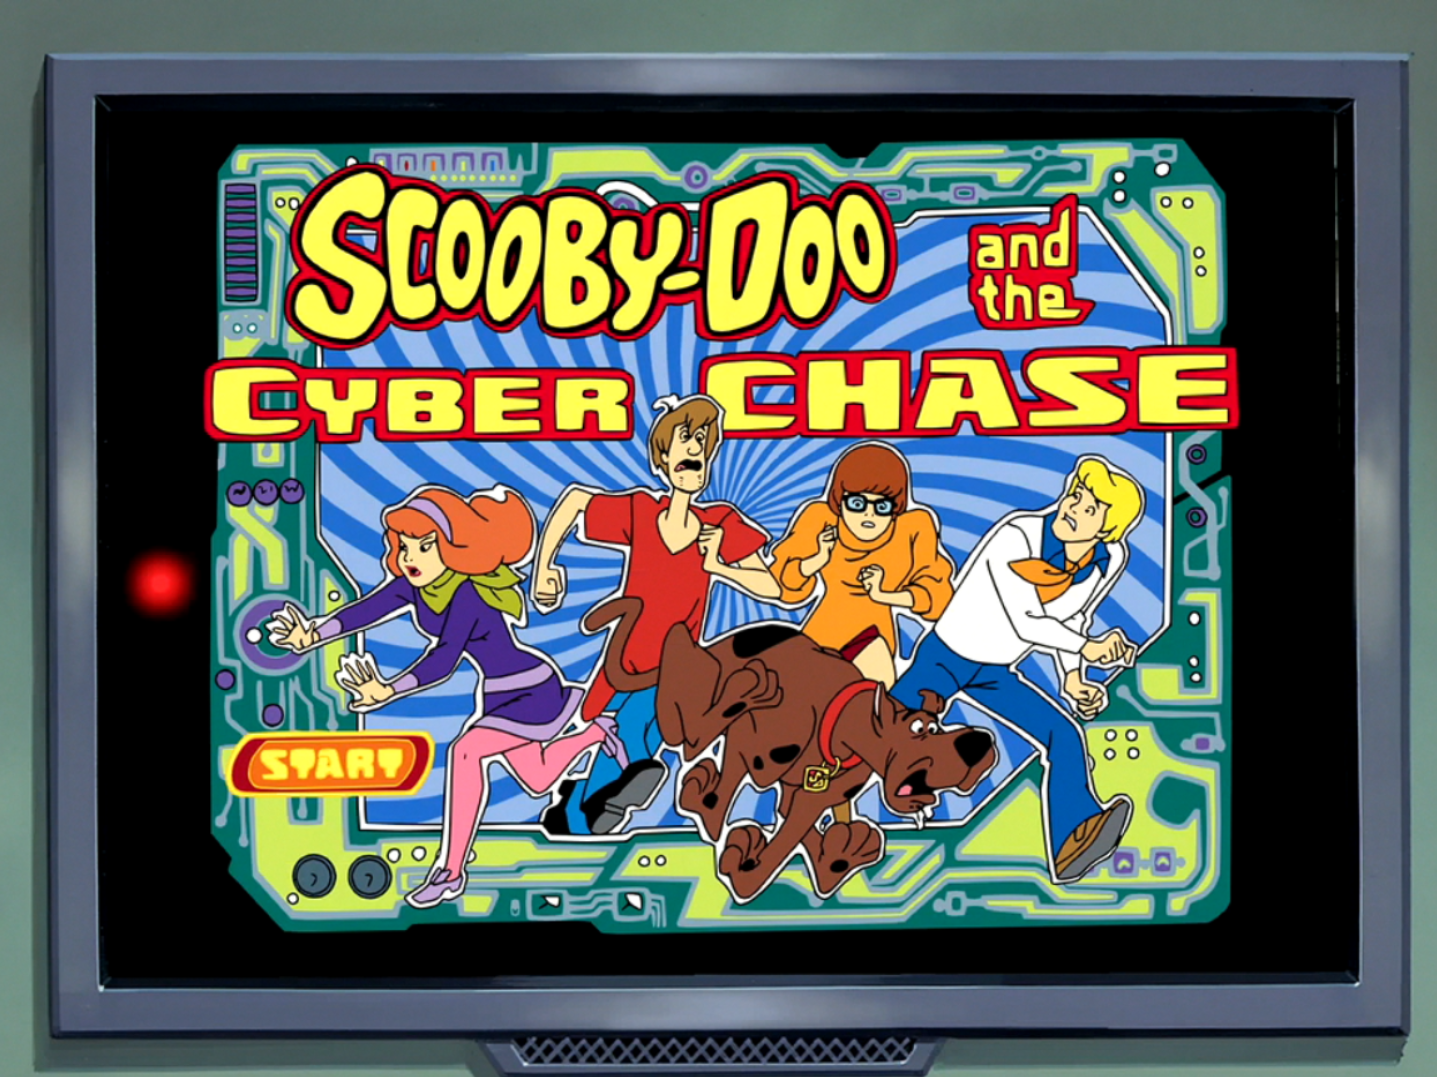 Scooby doo games. Скуби-Ду и Кибер-погоня (2001). Скуби Ду и Кибер погоня. Скуби Ду Cyber Chase. Скуби Ду PS 1.